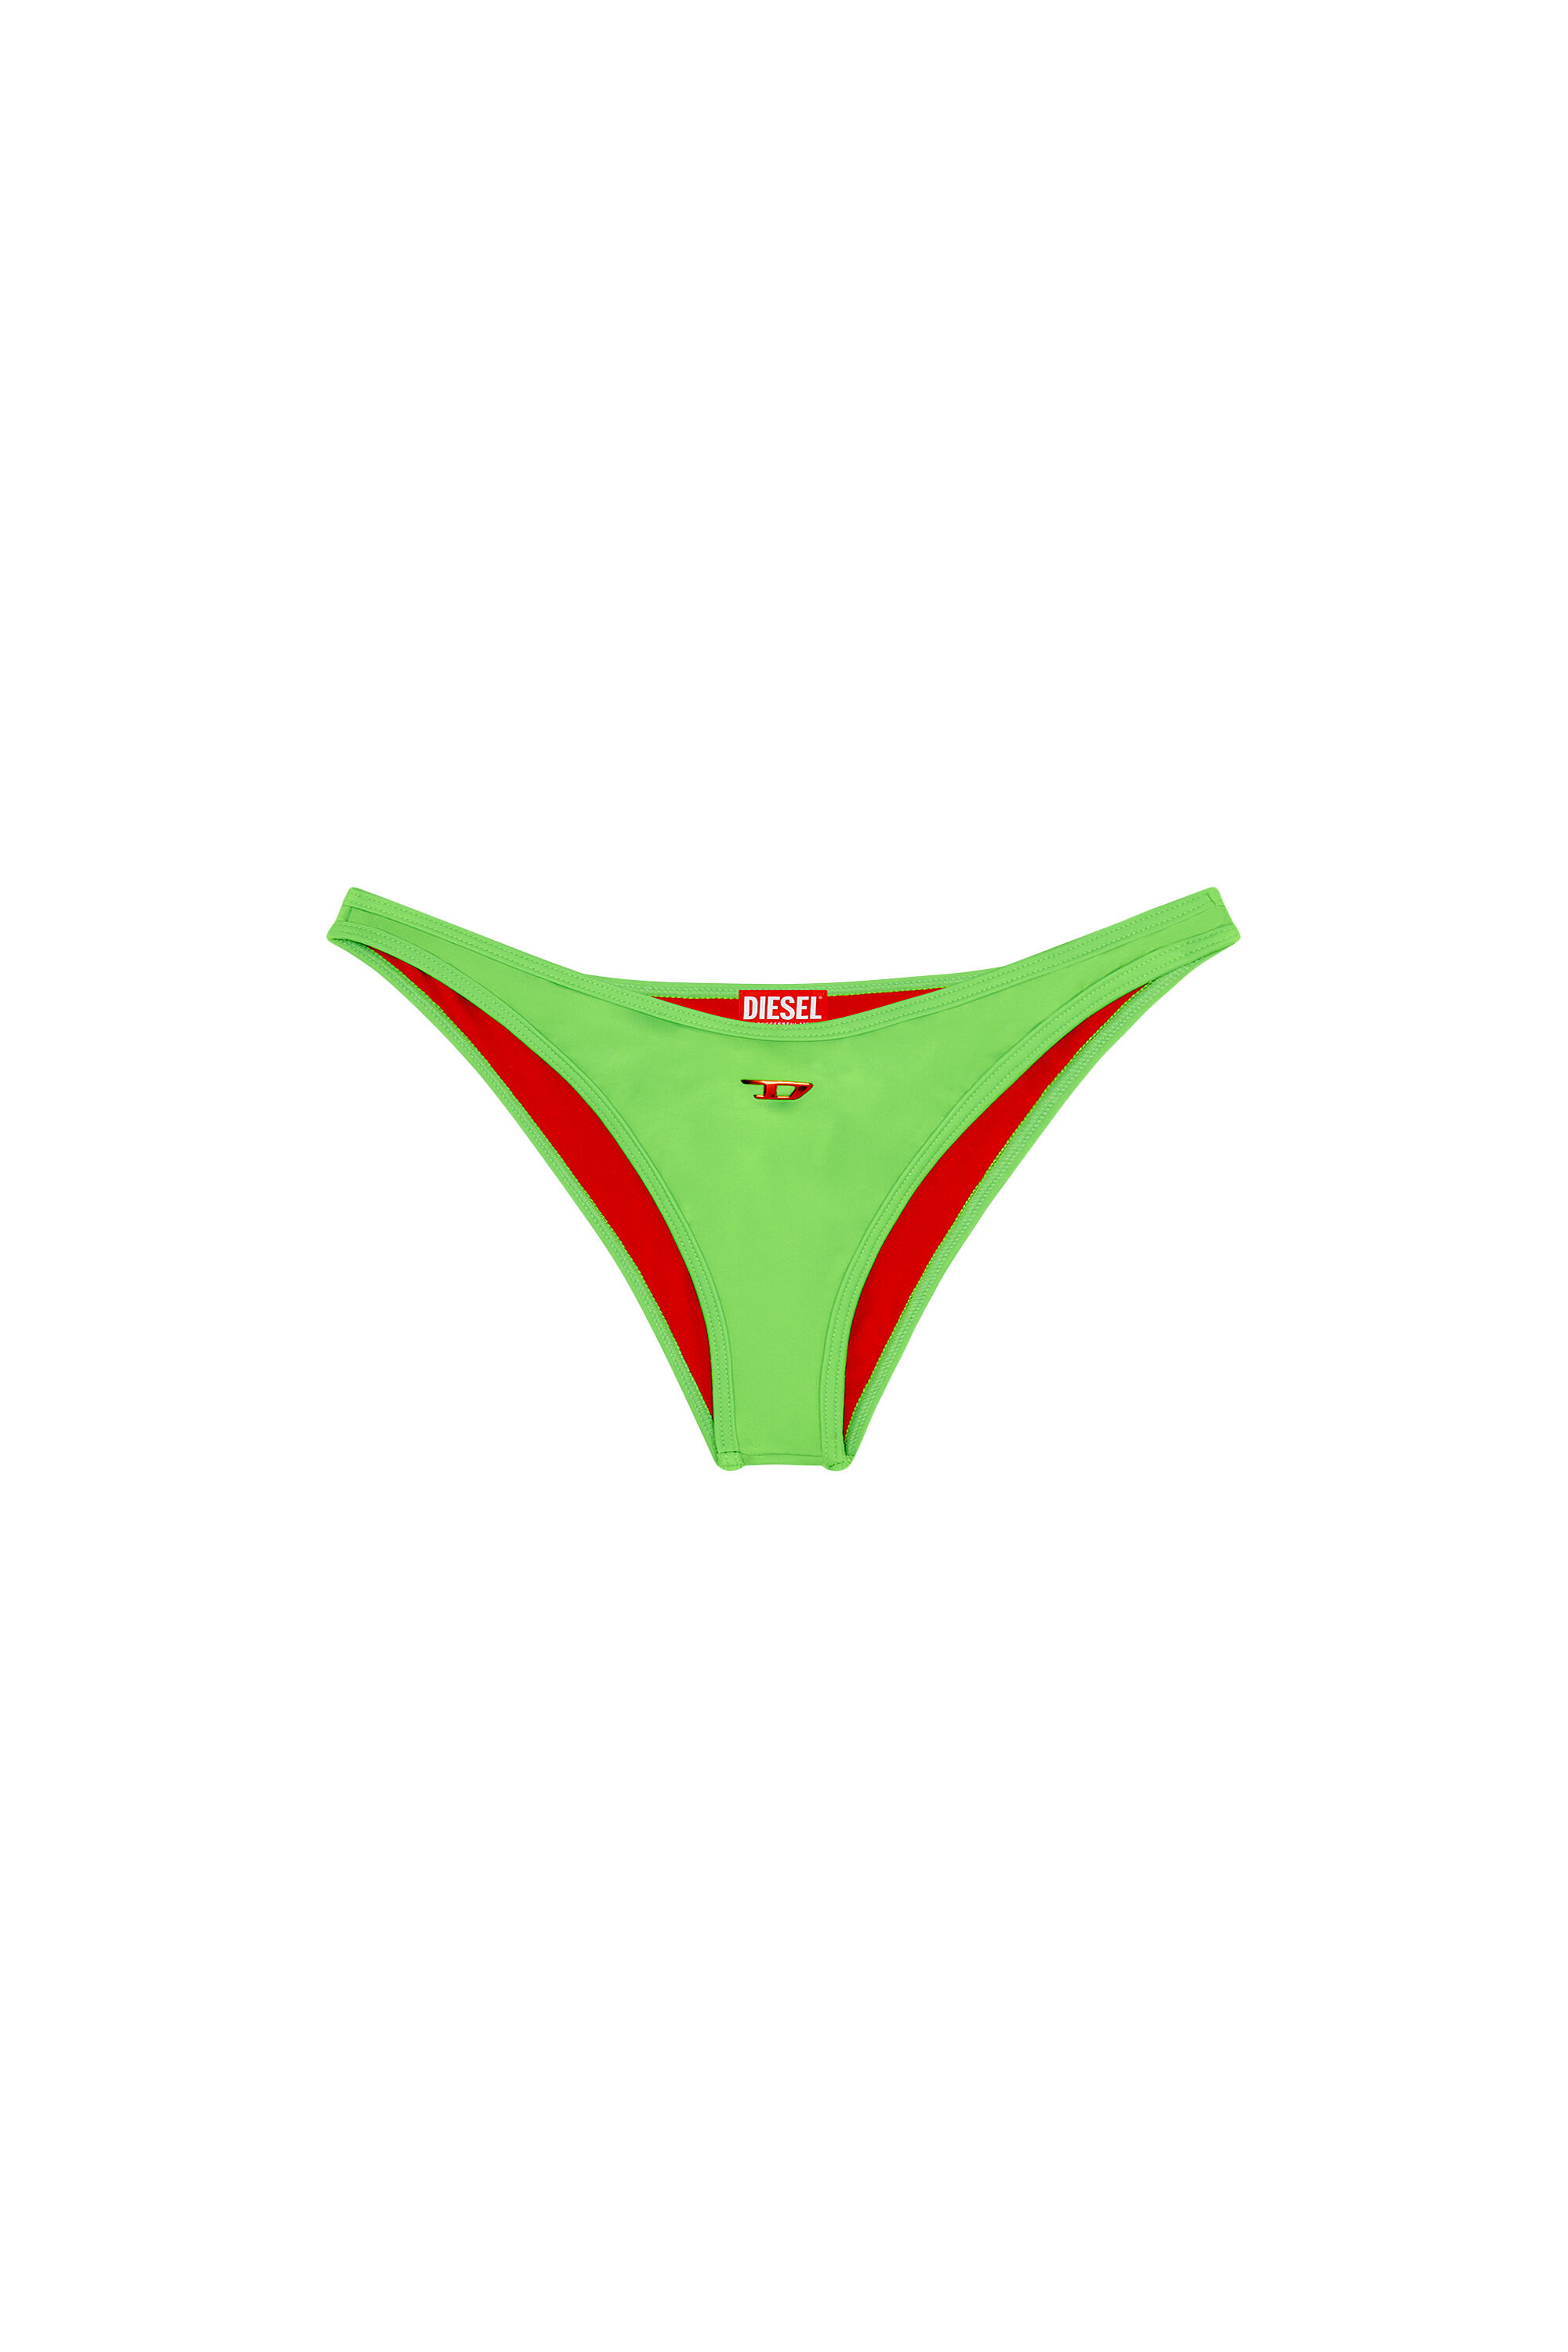 Women's Neon bikini bottoms with D logo | Green | Diesel